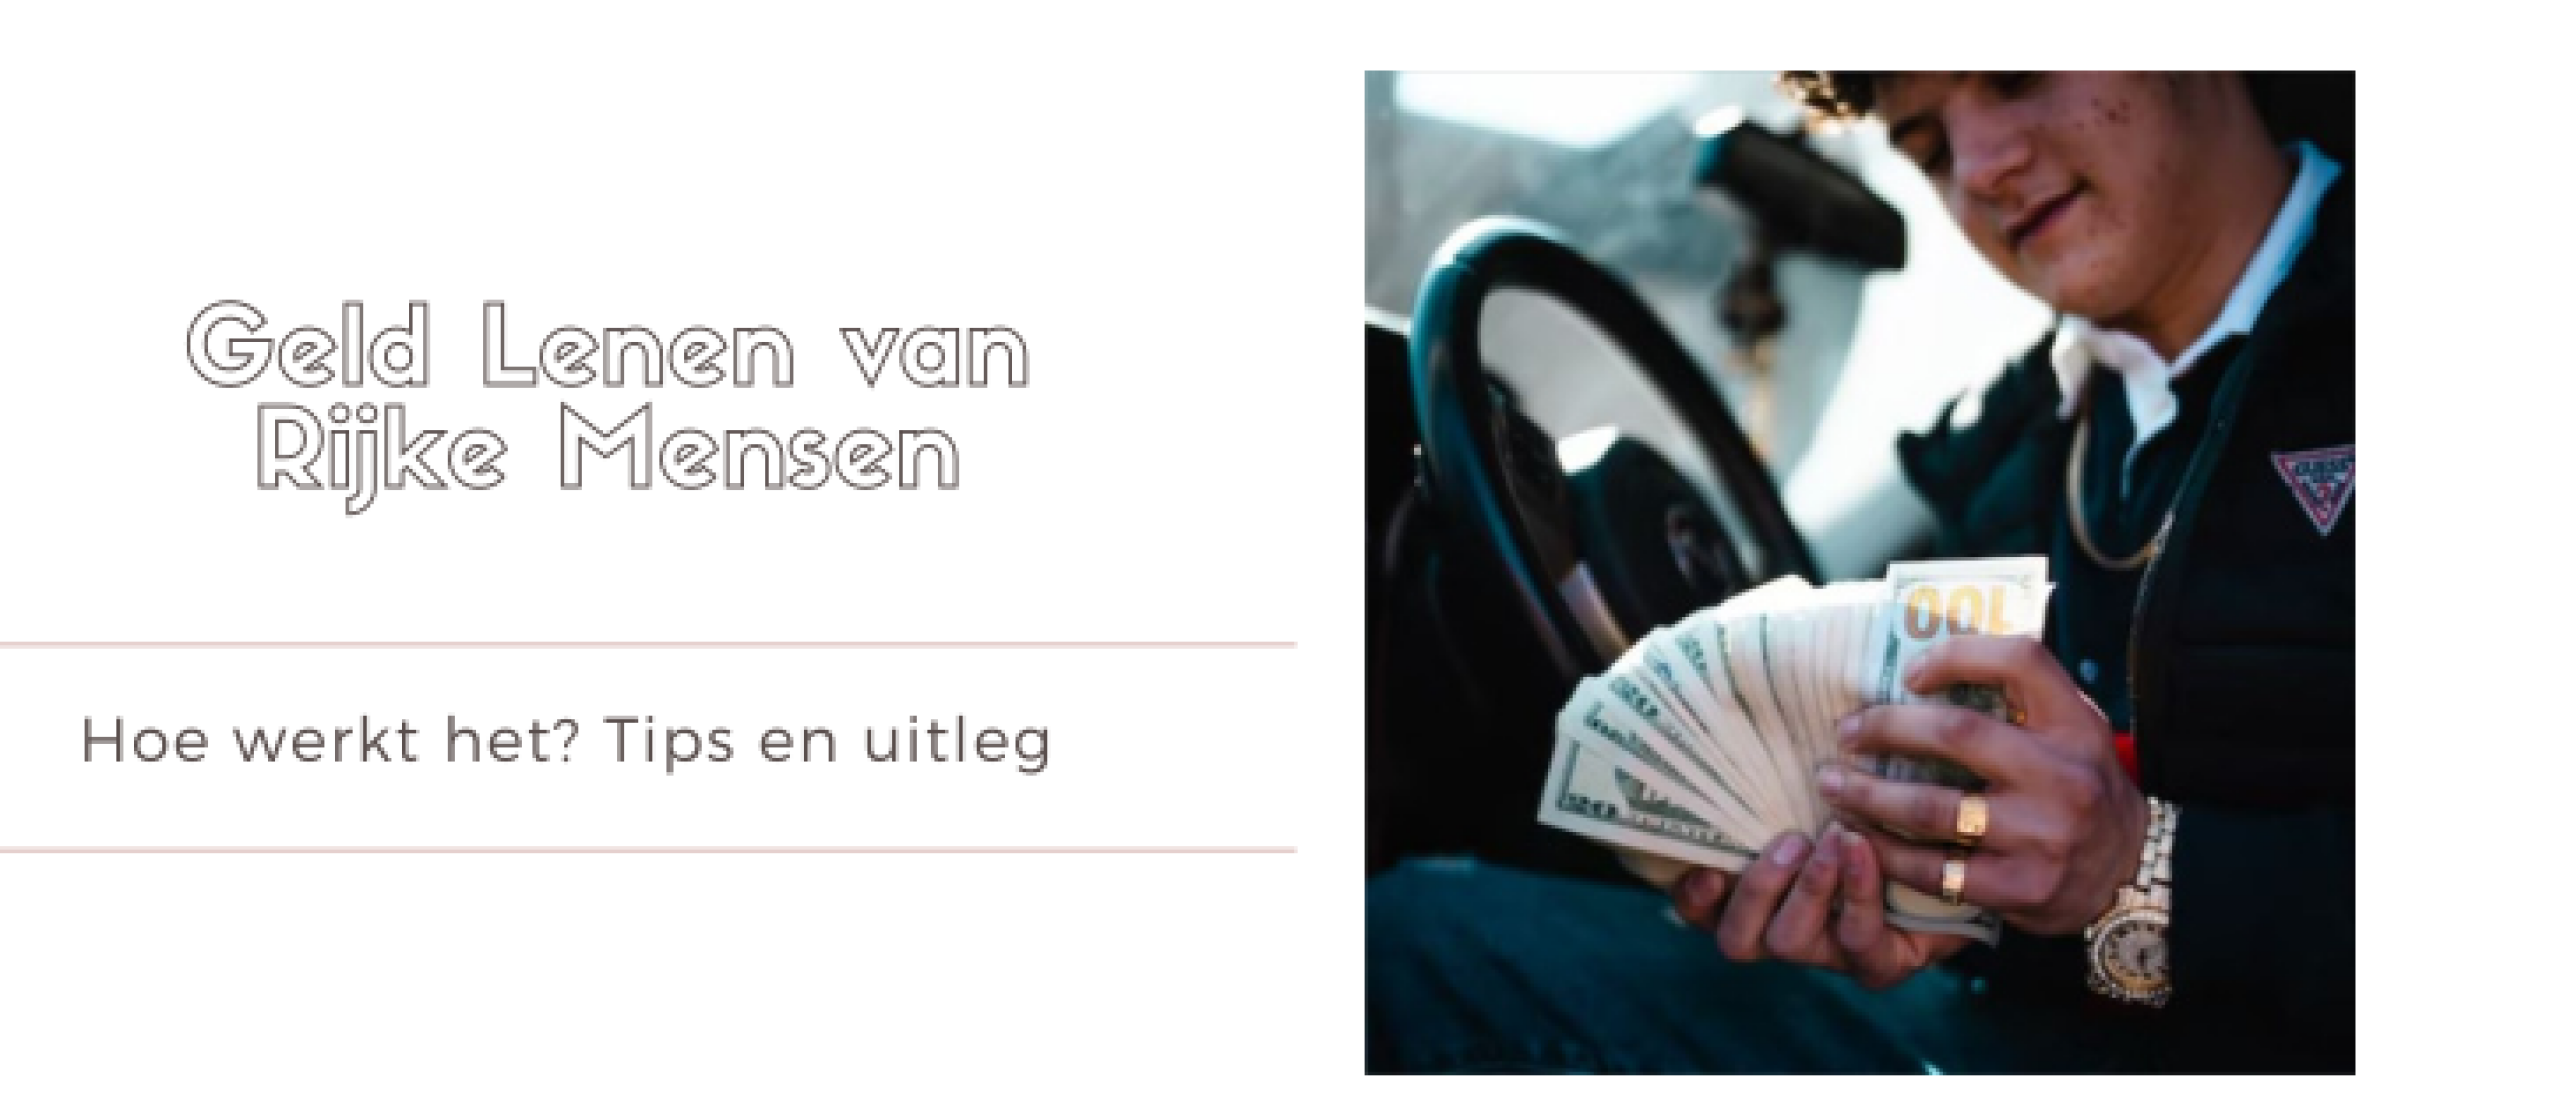 Geld Lenen van Rijke Mensen | Minilening.nl